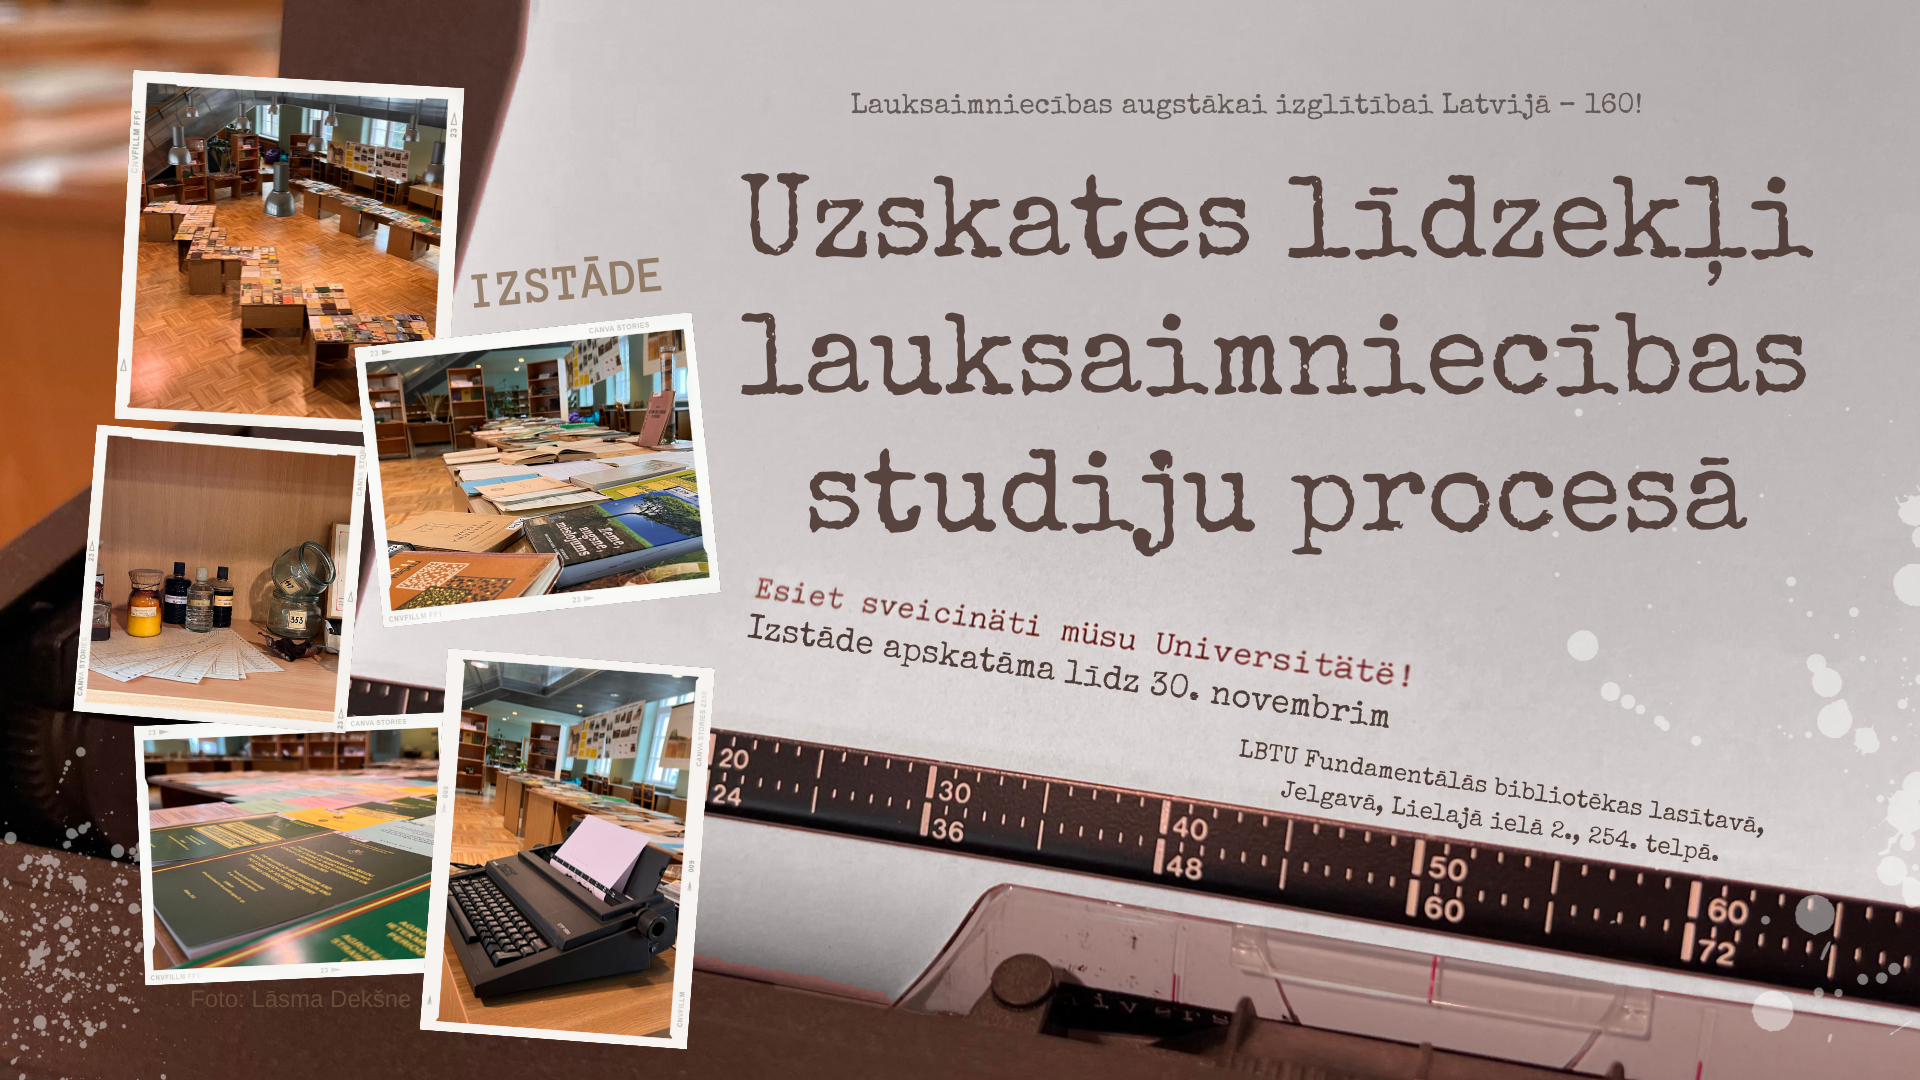 Lauksaimniecības augstākai izglītībai Latvijā - 160! Līdz 30. novembrim LBTU Fundamentālās bibliotēkas lasītavā apskatāma izstāde "Uzskates līdzekļi lauksaimniecības studiju procesā". Izstādi organizē LBTU Lauksaimniecības un pārtikas tehnoloģiju fakultātē sadarbībā ar Fundamentālo bibliotēku.